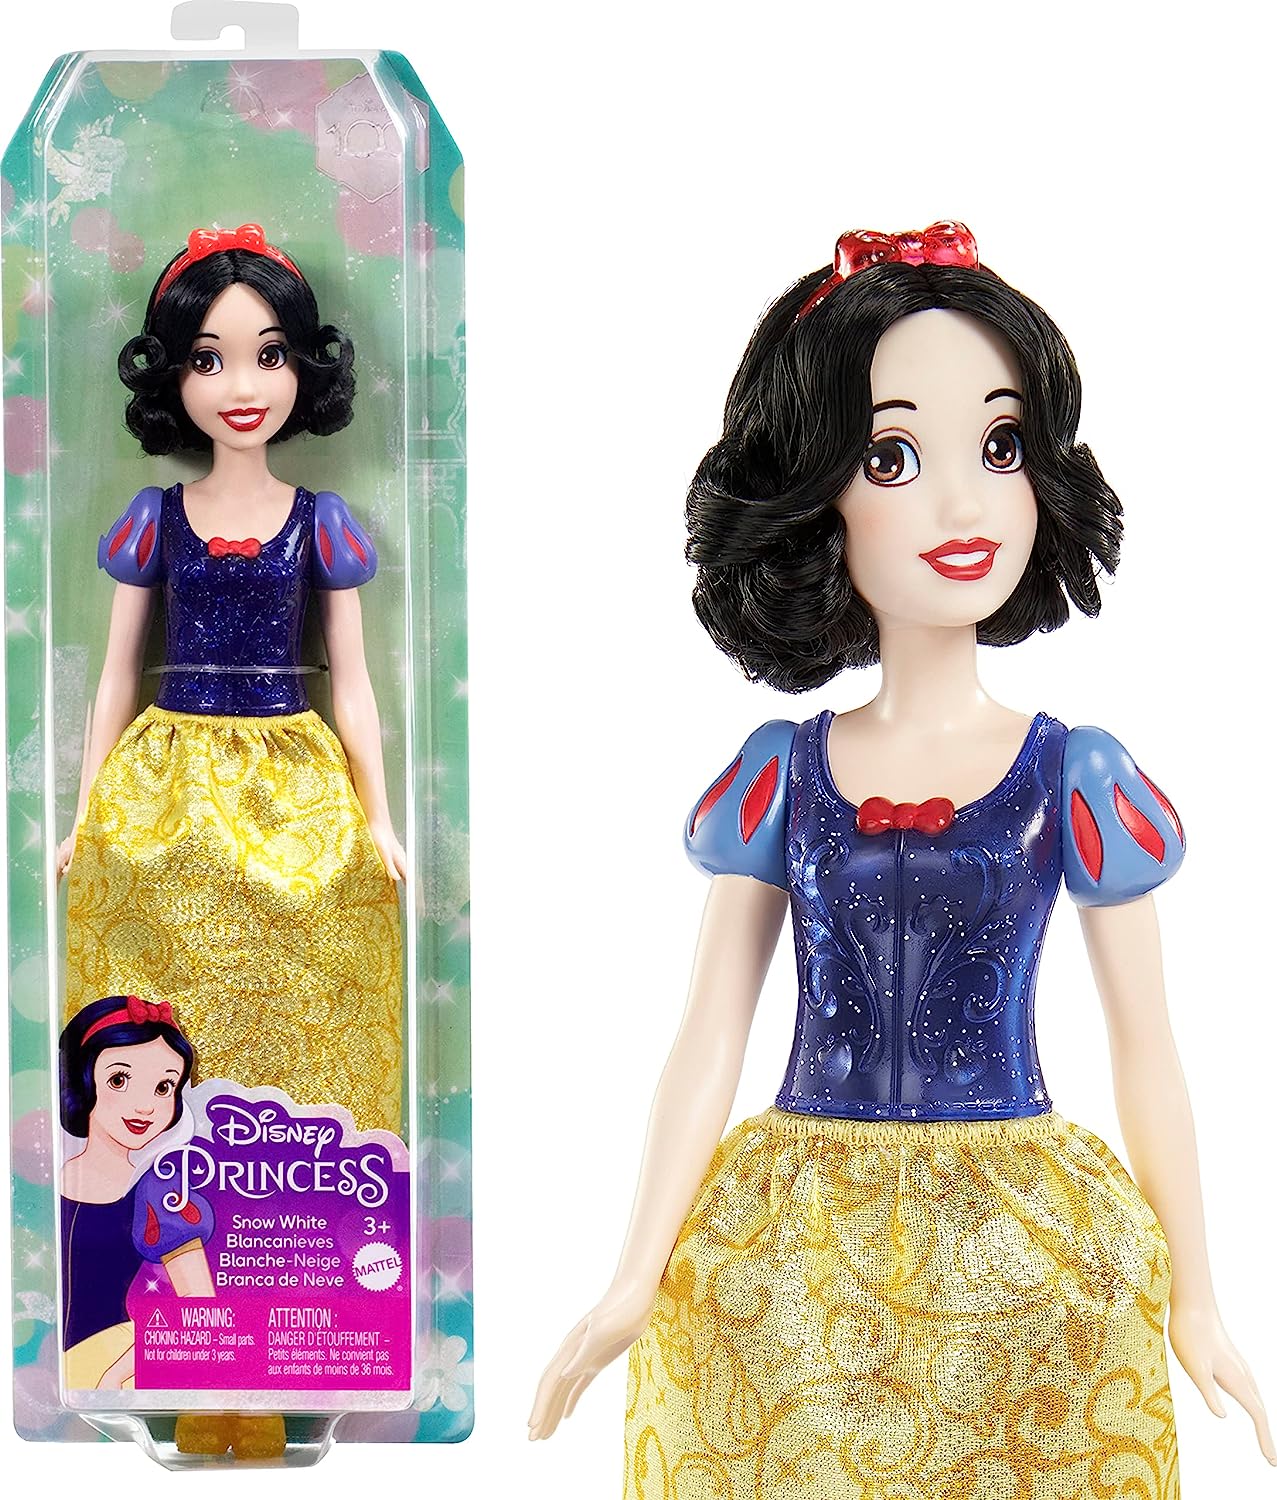 Beautiful Mattel Disney Princess